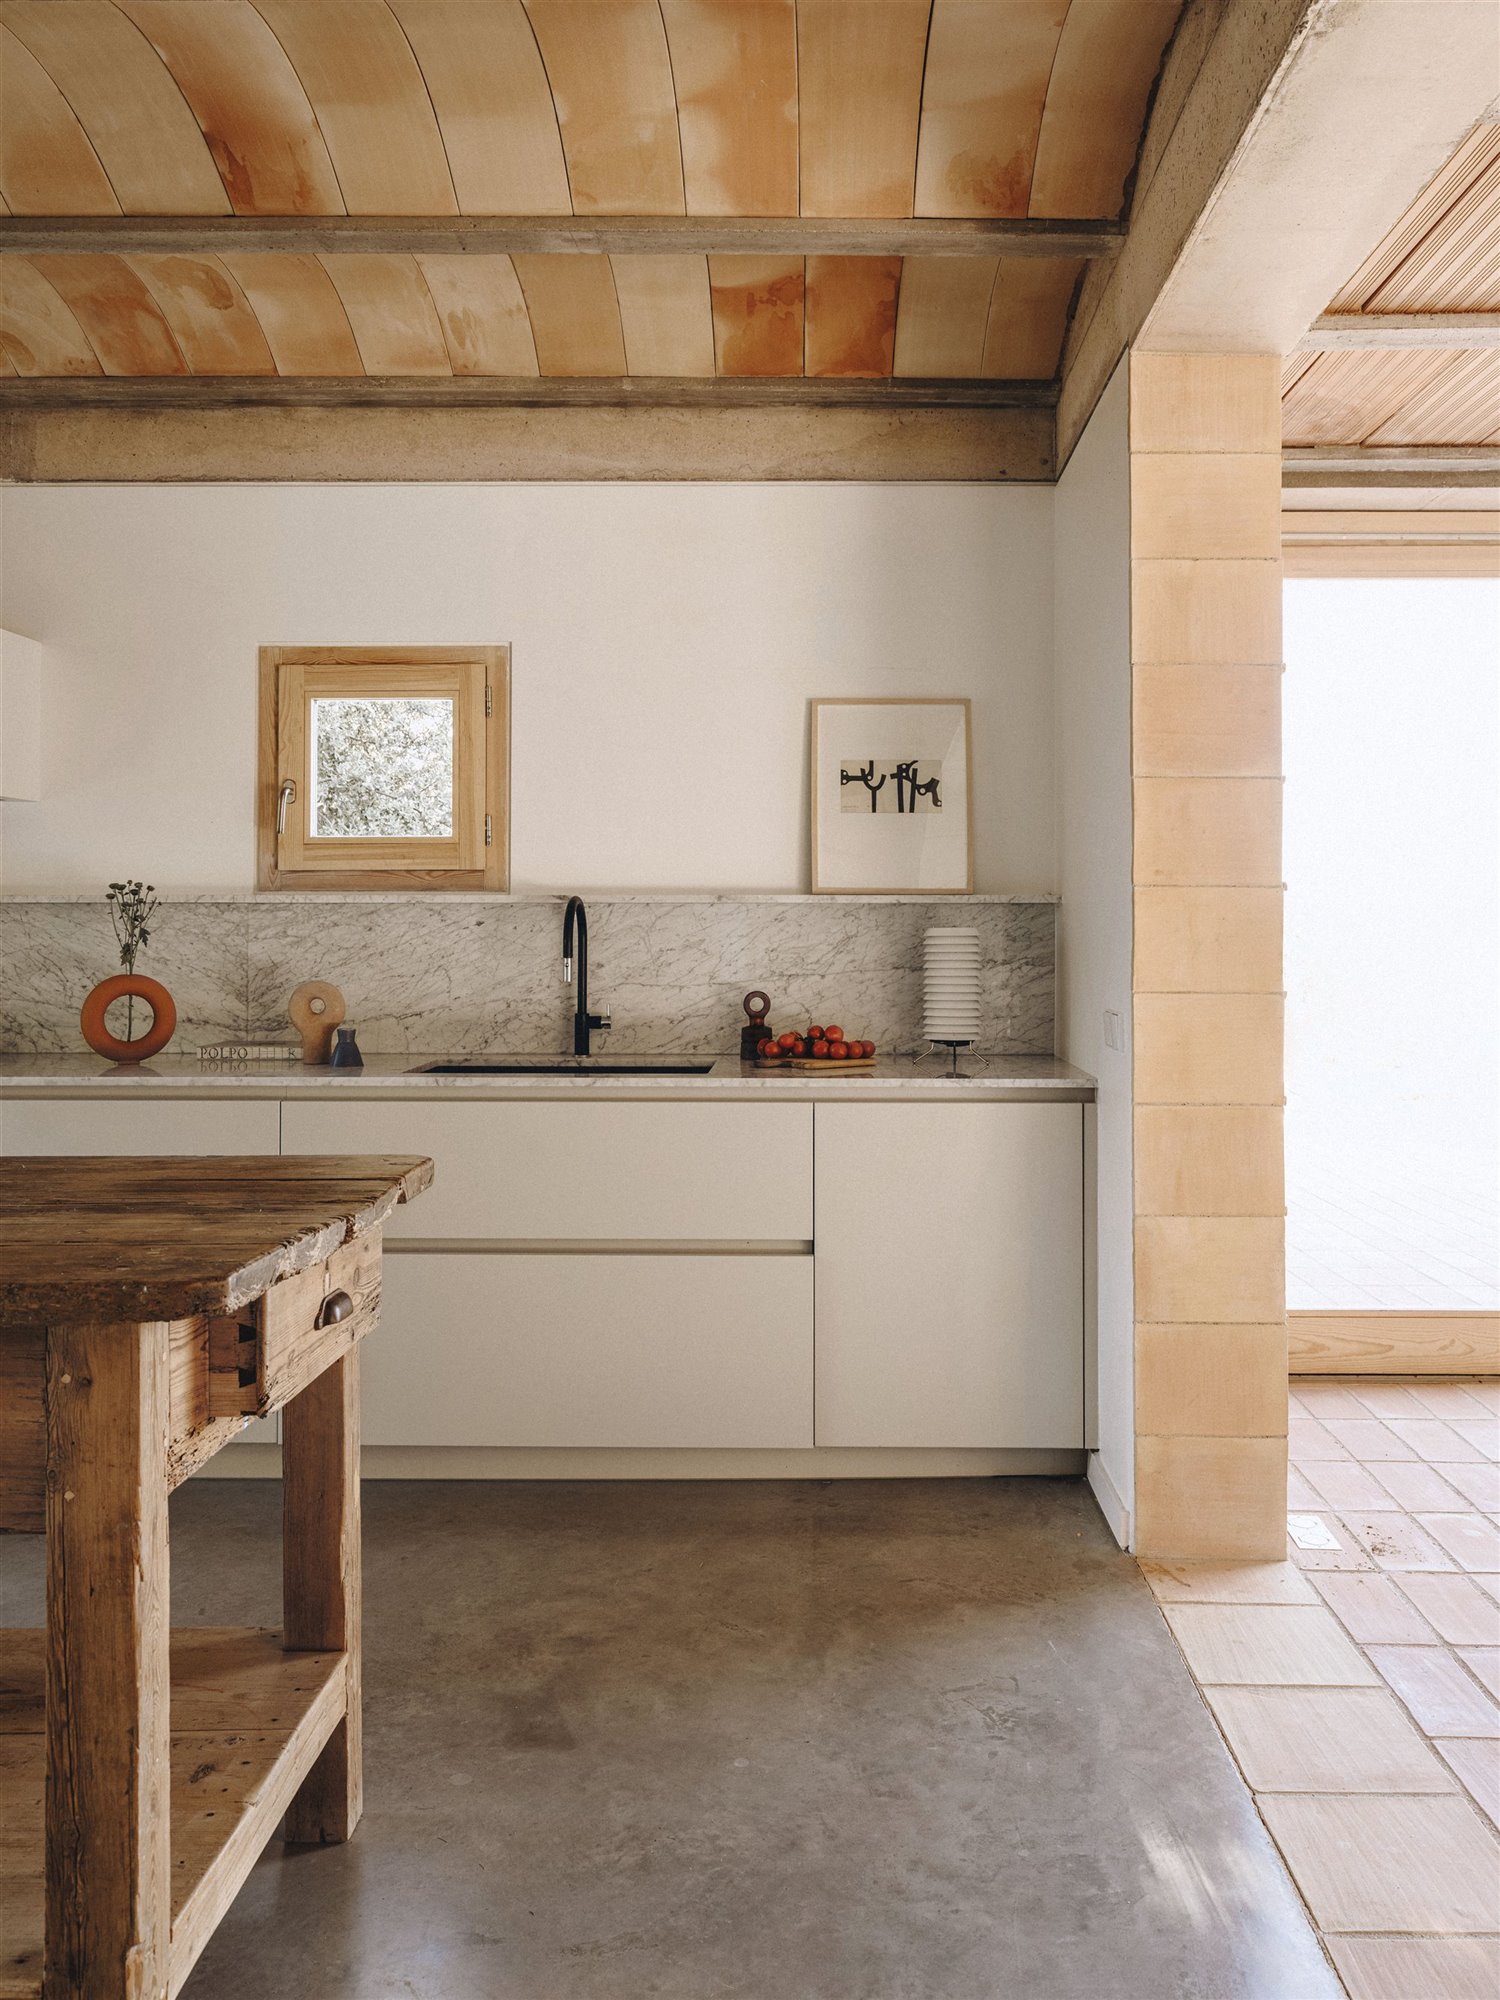 Casa moderna en el campo del estudio de arquitectura Mesura cocina con muebles de madera